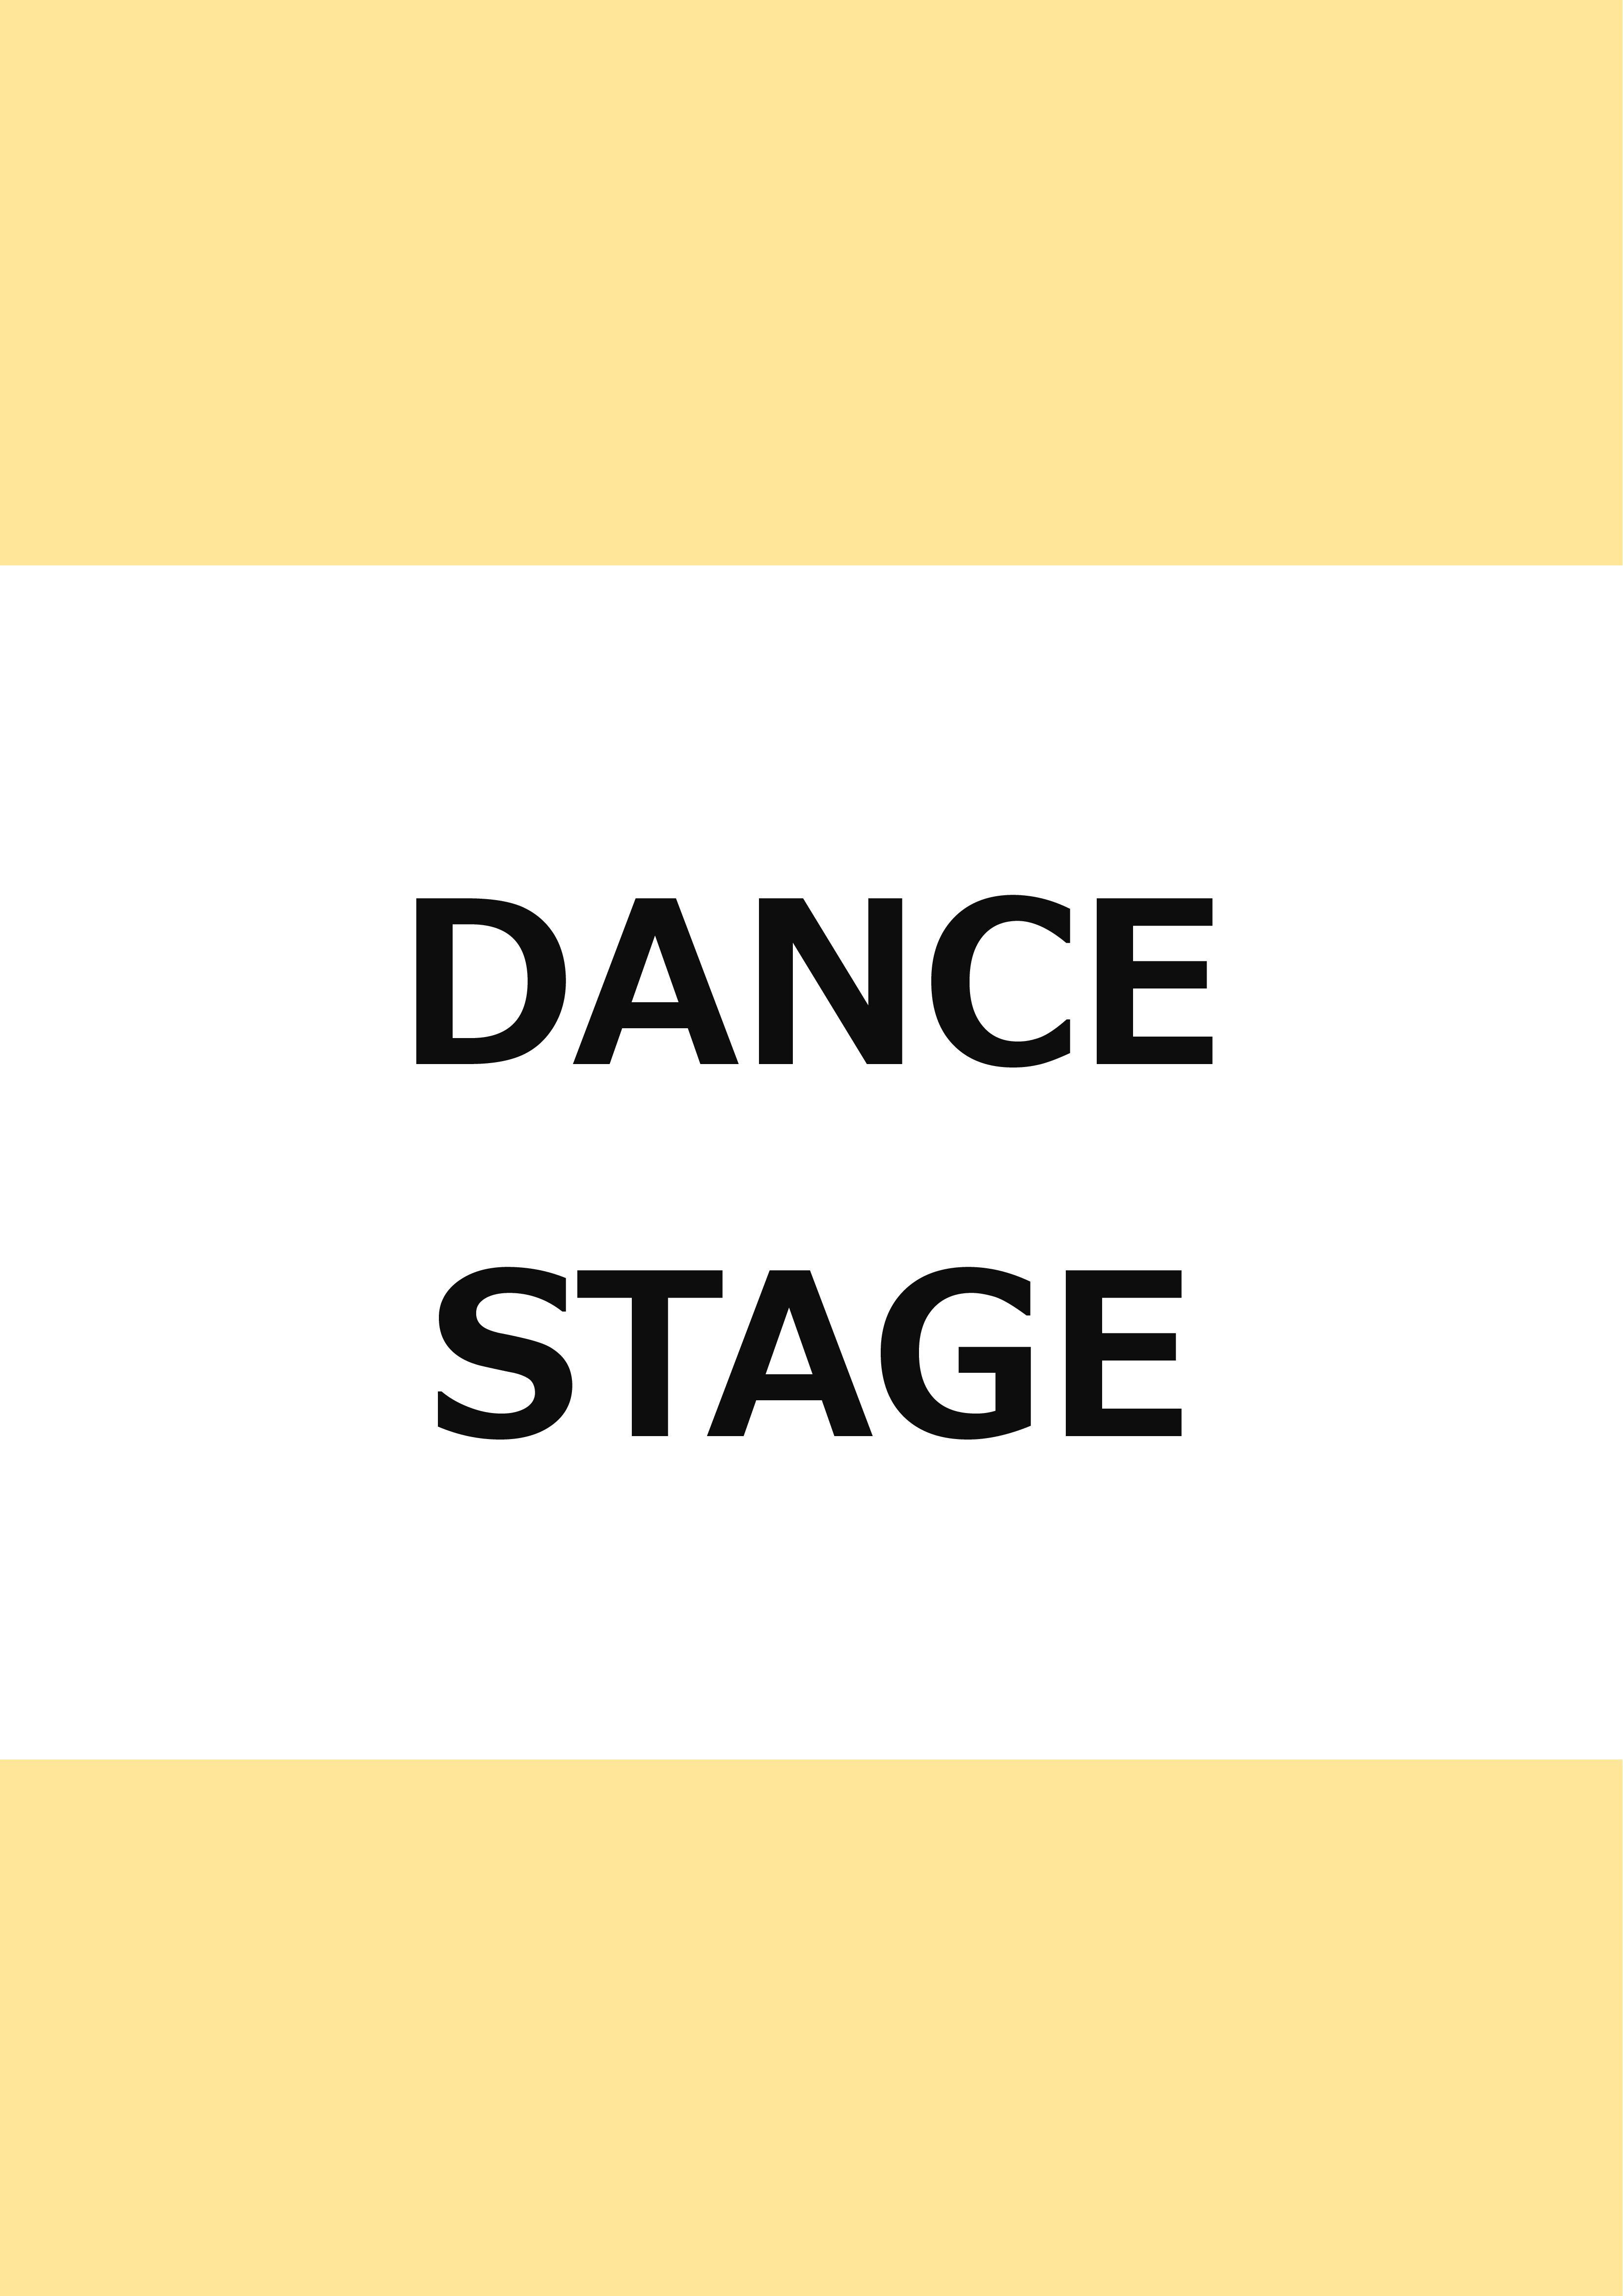 市民がつくるコンサートシリーズ vol.6 SiRiUS DANCE STAGE